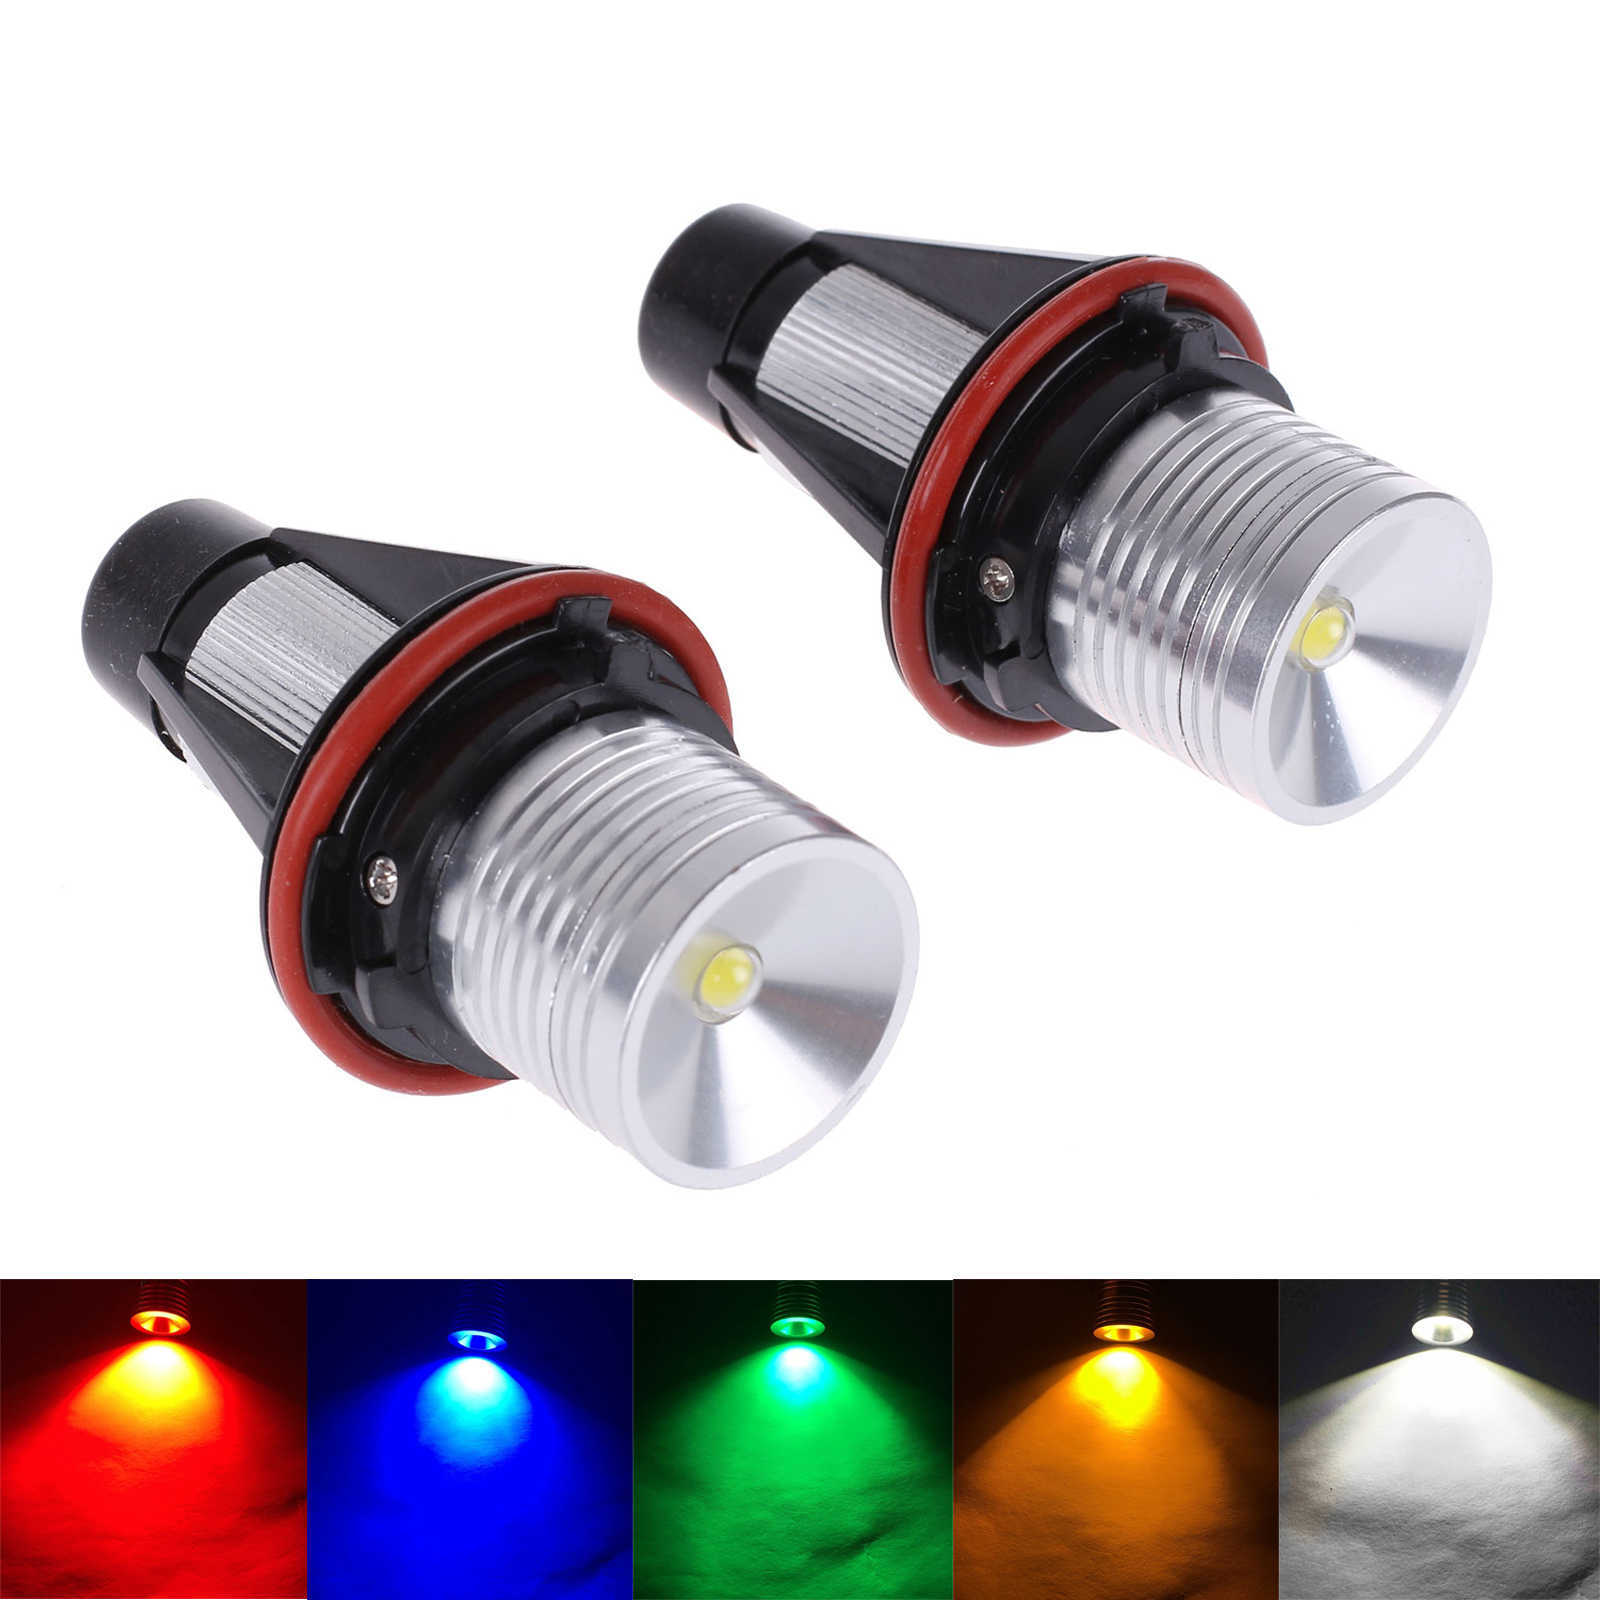 2 adet Hata Ücretsiz LED Melek Gözler Marker Işıkları Ampuller için BMW E39 E53 E60 E61 E63 E64 E65 E66 E87 525i 530i XI 545i M5 Araba Işık